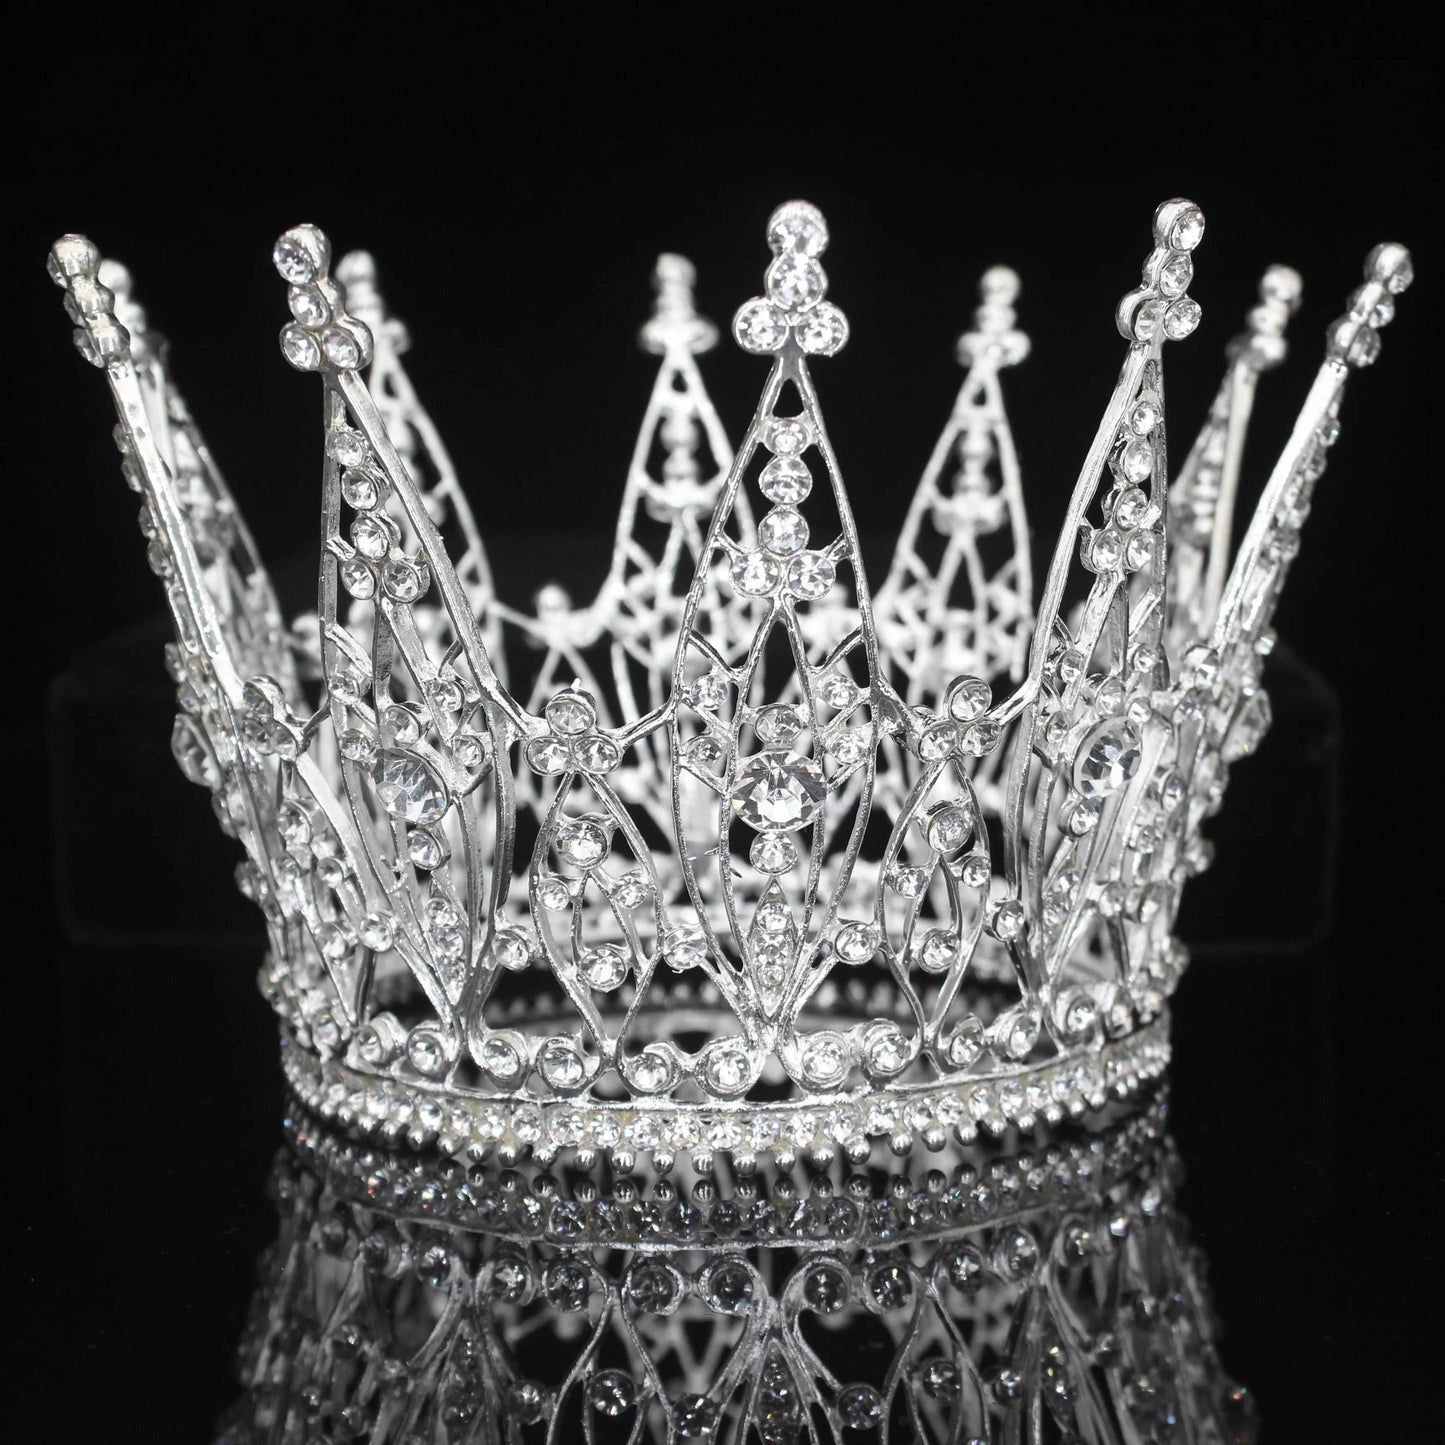 La corona benedictina